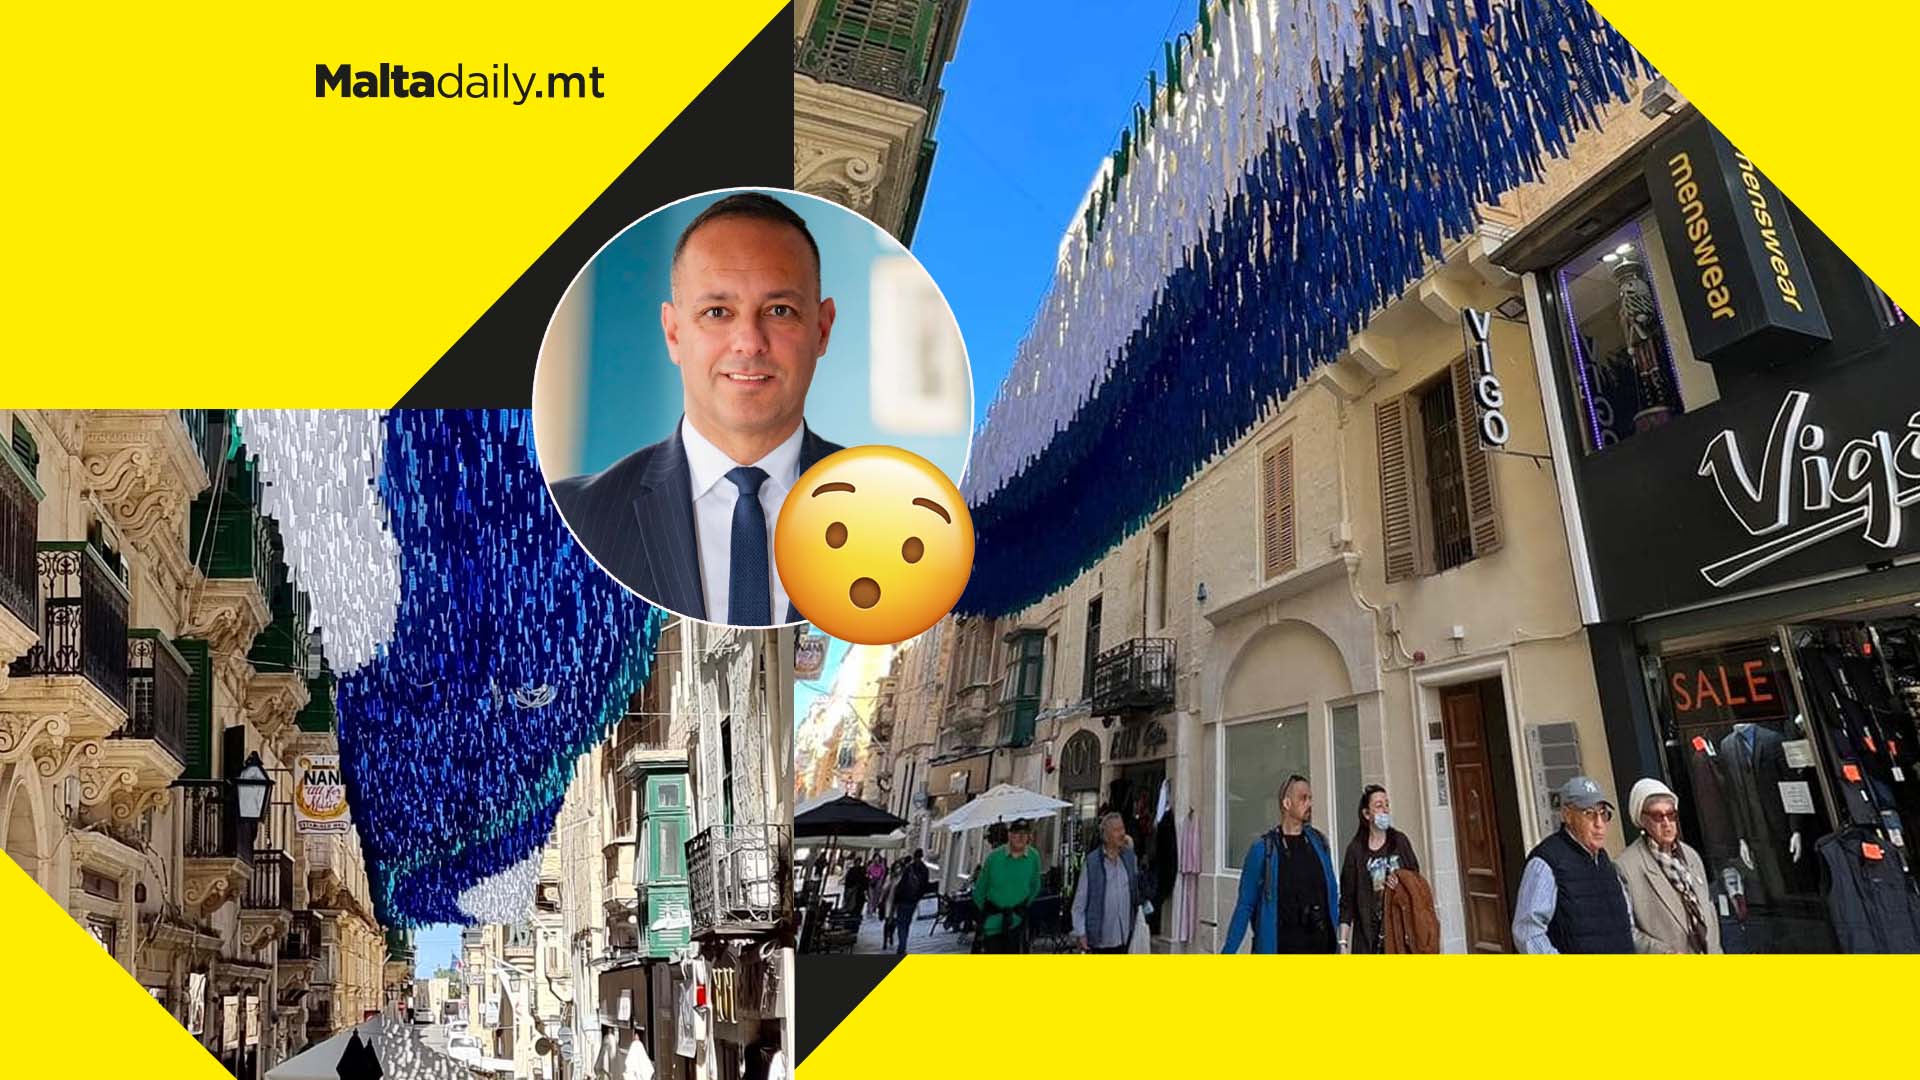 Between sky and sea - Valletta art instalment captures Malta’s natural gifts